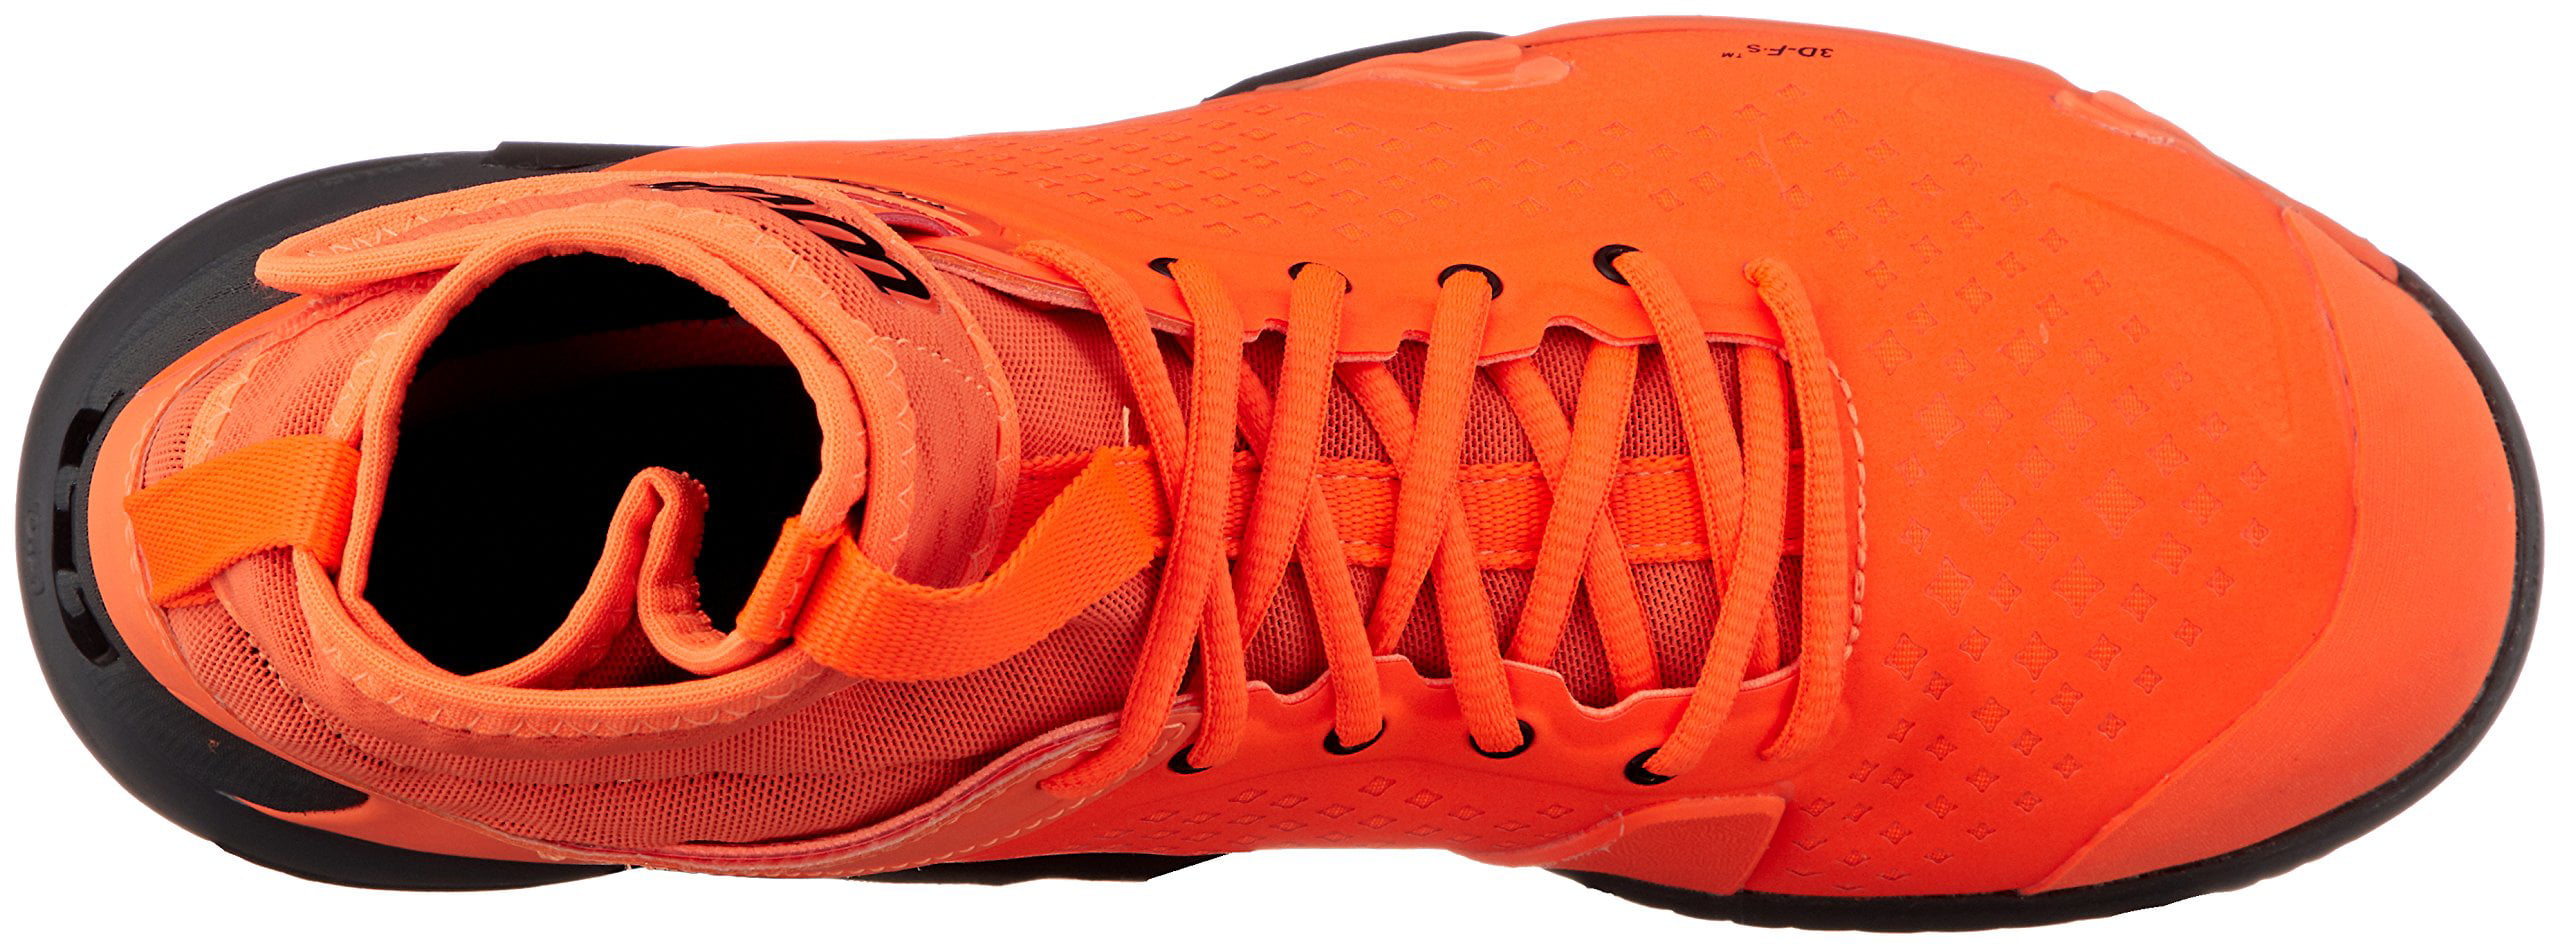 Wilson Men's Amplifeel Tennis Shoe (Shocking Orange/Magnet/Black 